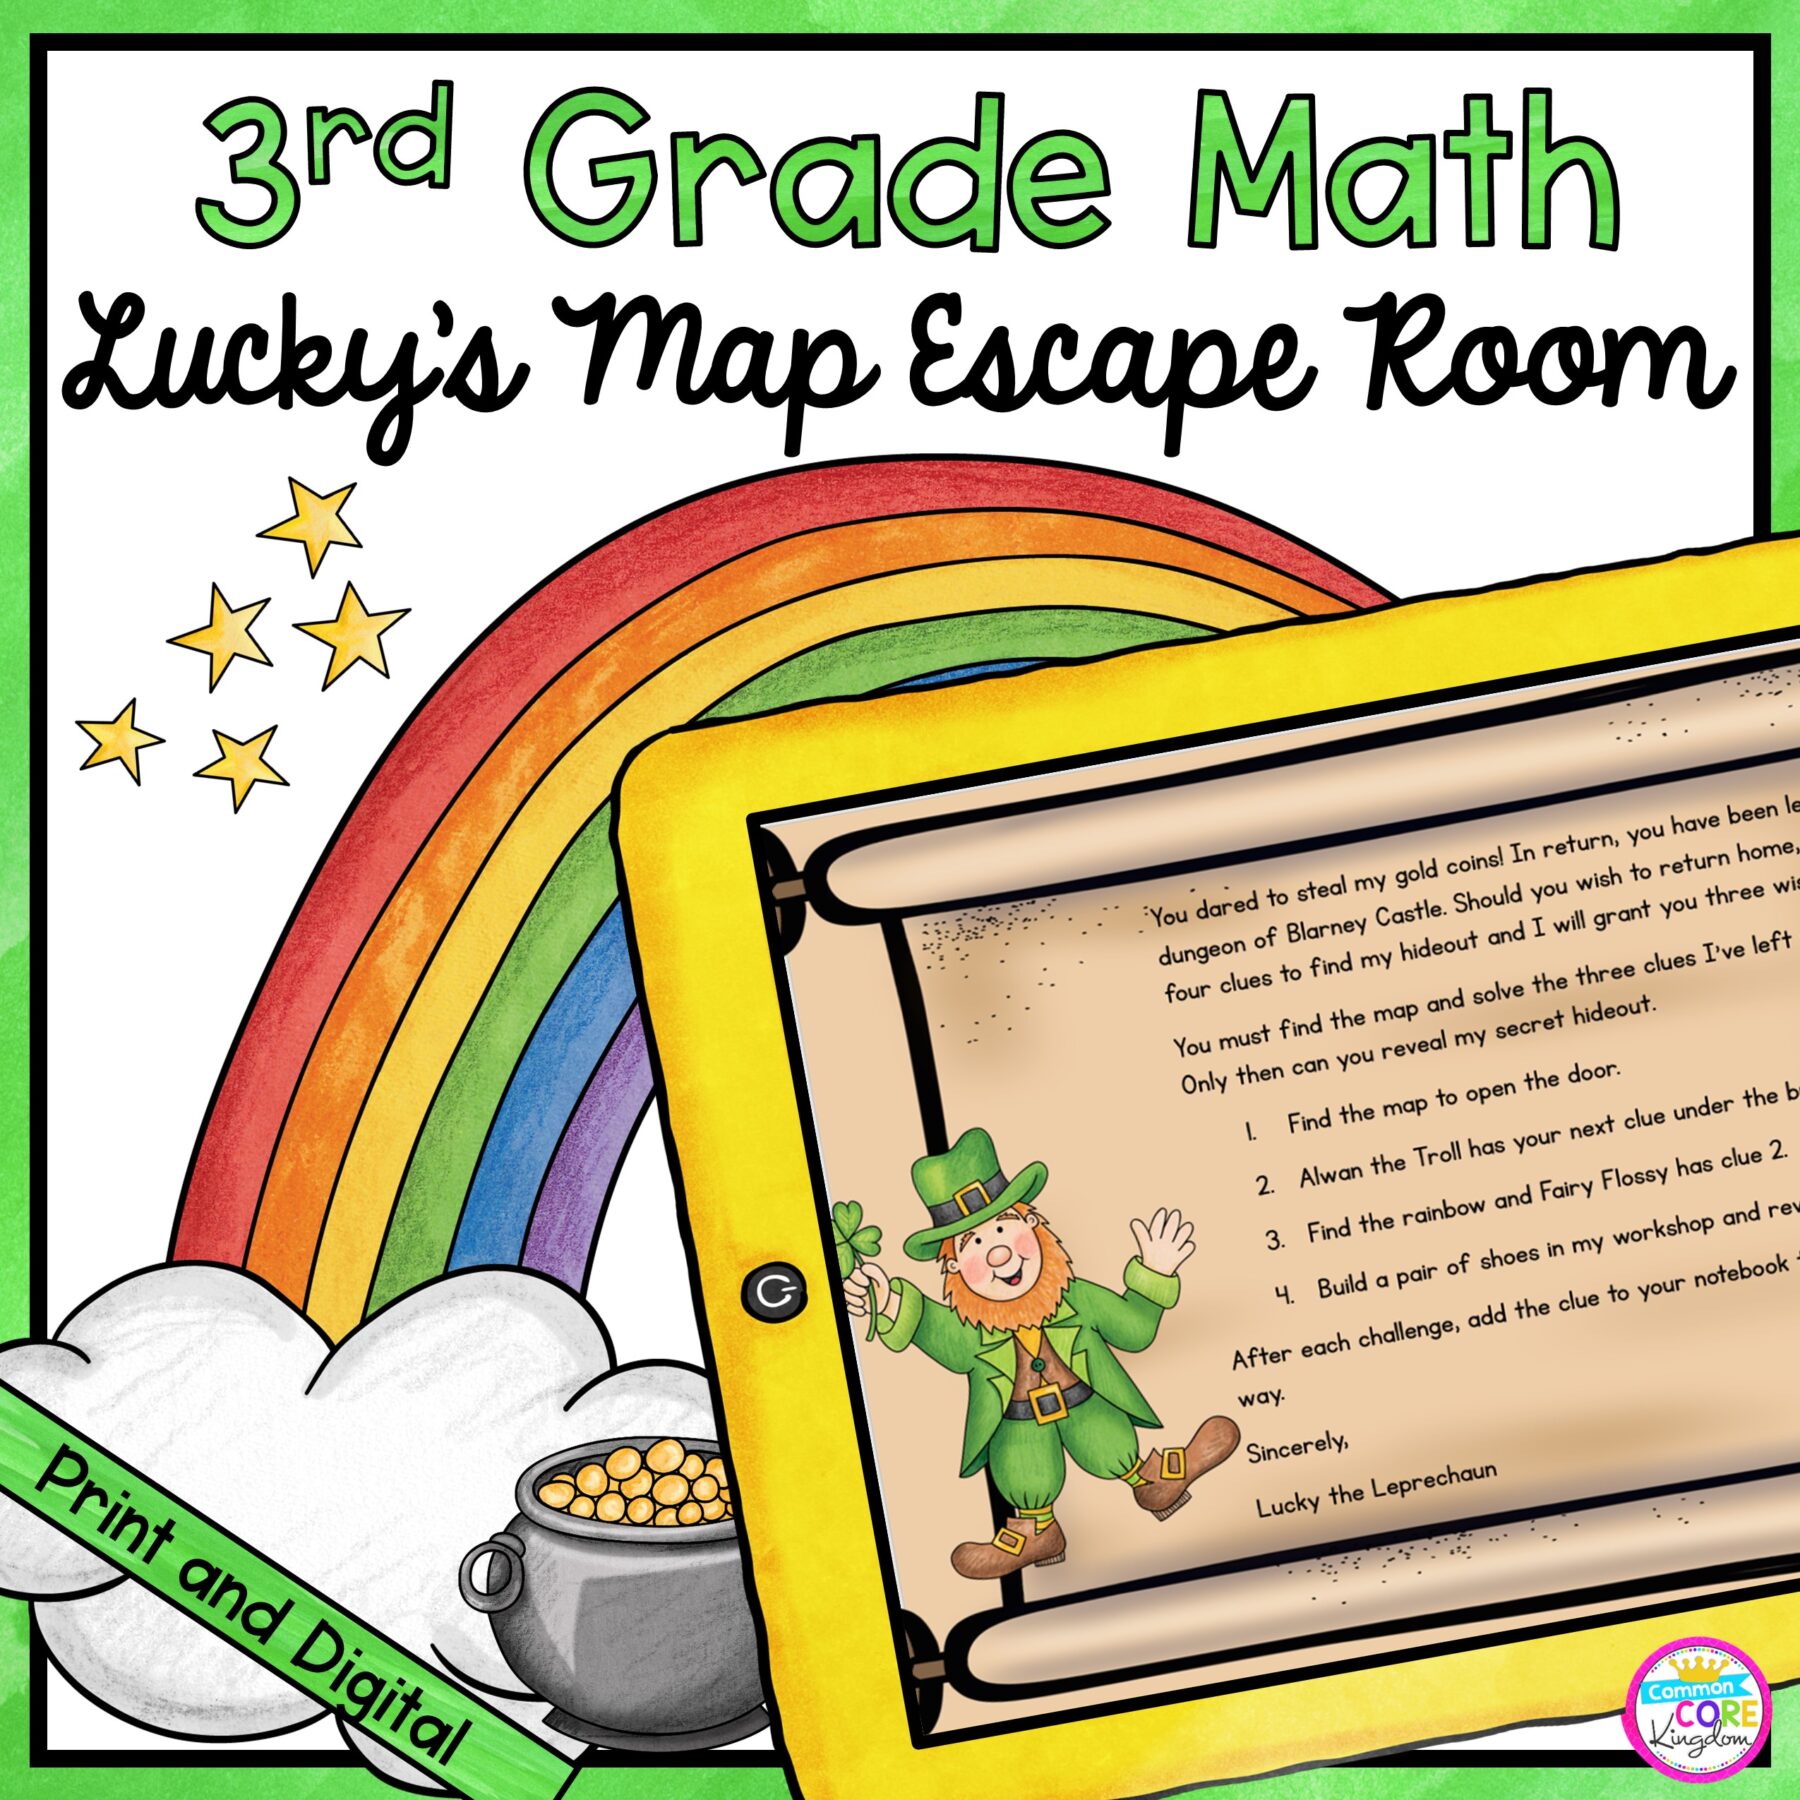 3rd Grade Math Escape Room Lucky's Map